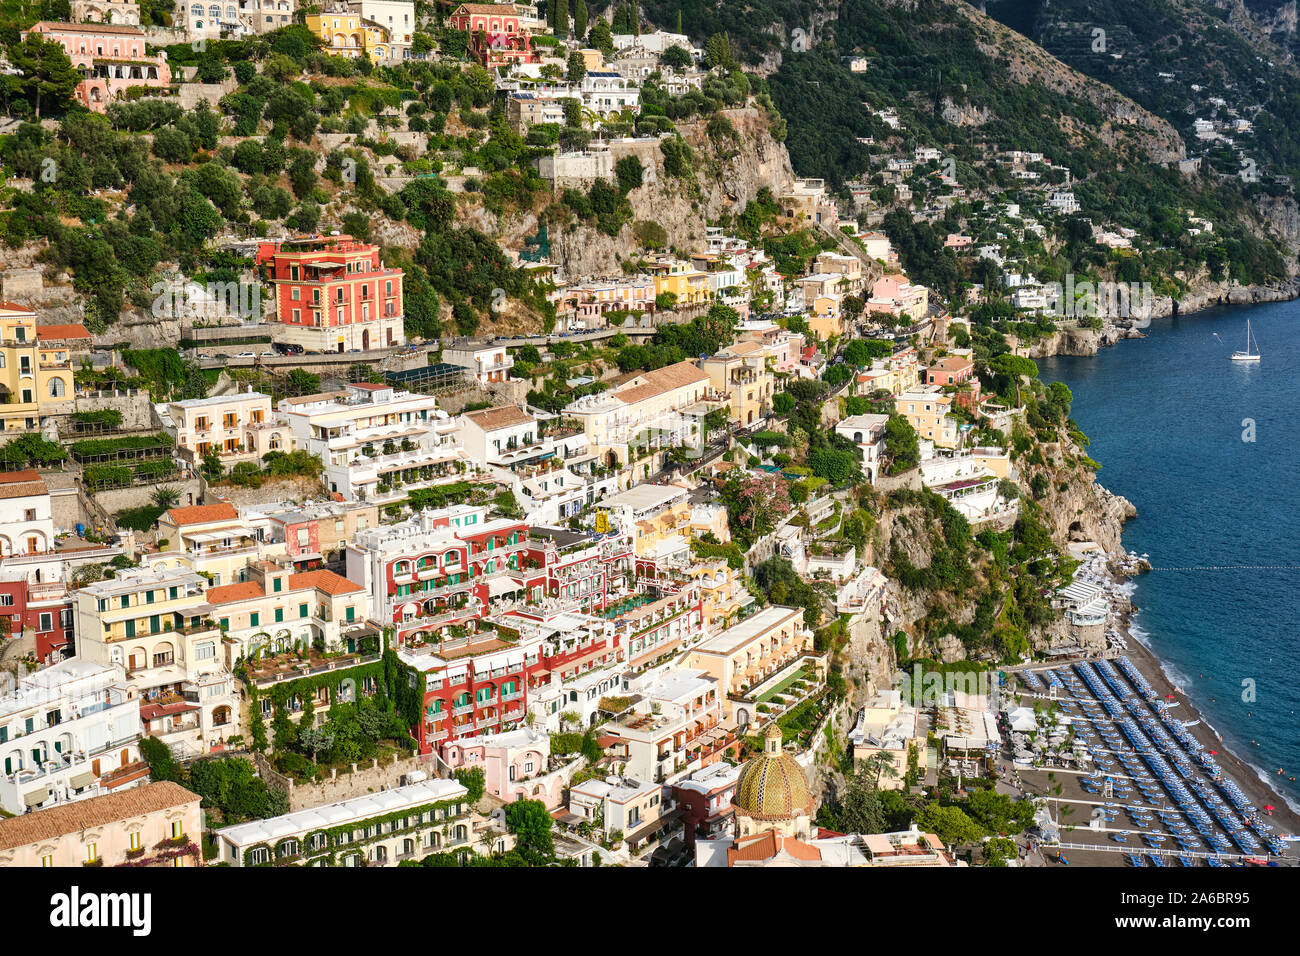 The beautiful village of Positano on the Italian Amalfi Coast Stock Photo